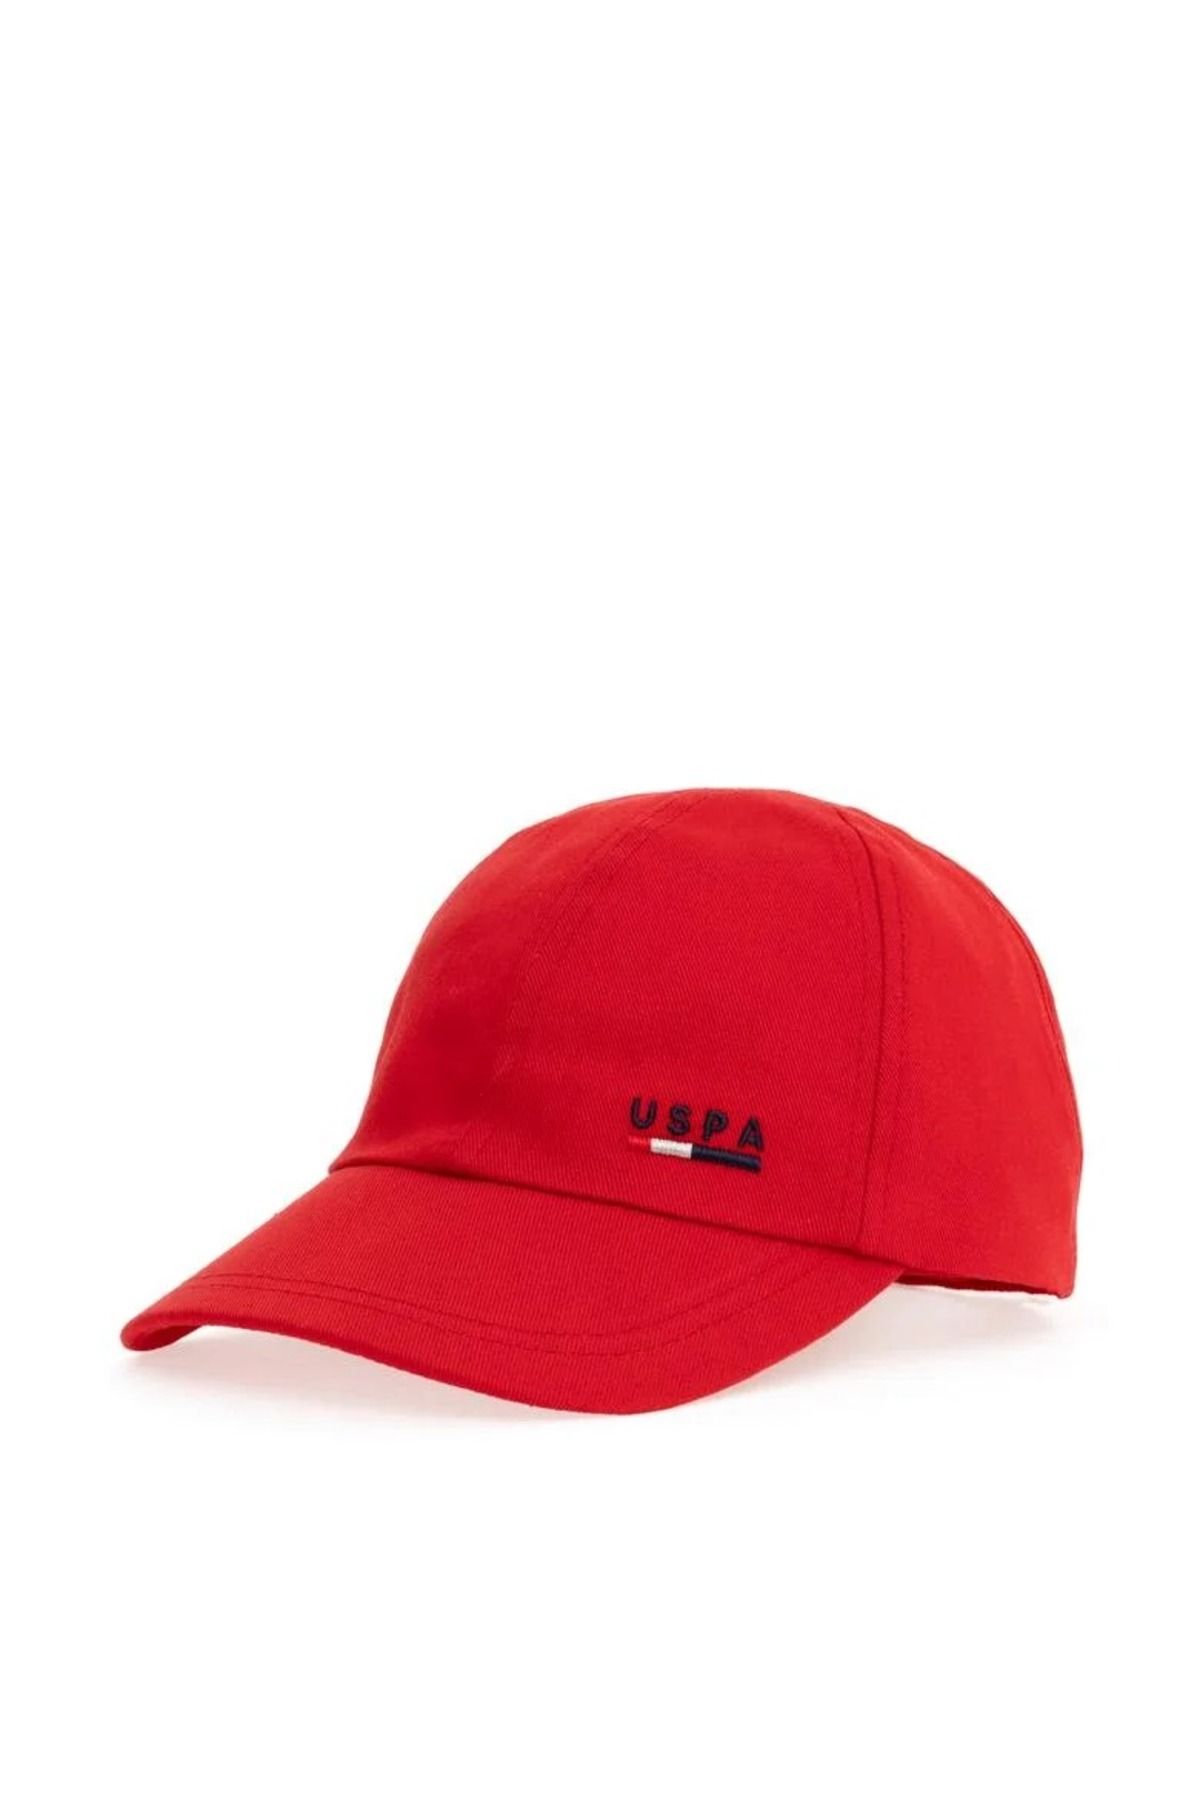 U.S. Polo Assn. Erkek Kırmızı Şapka